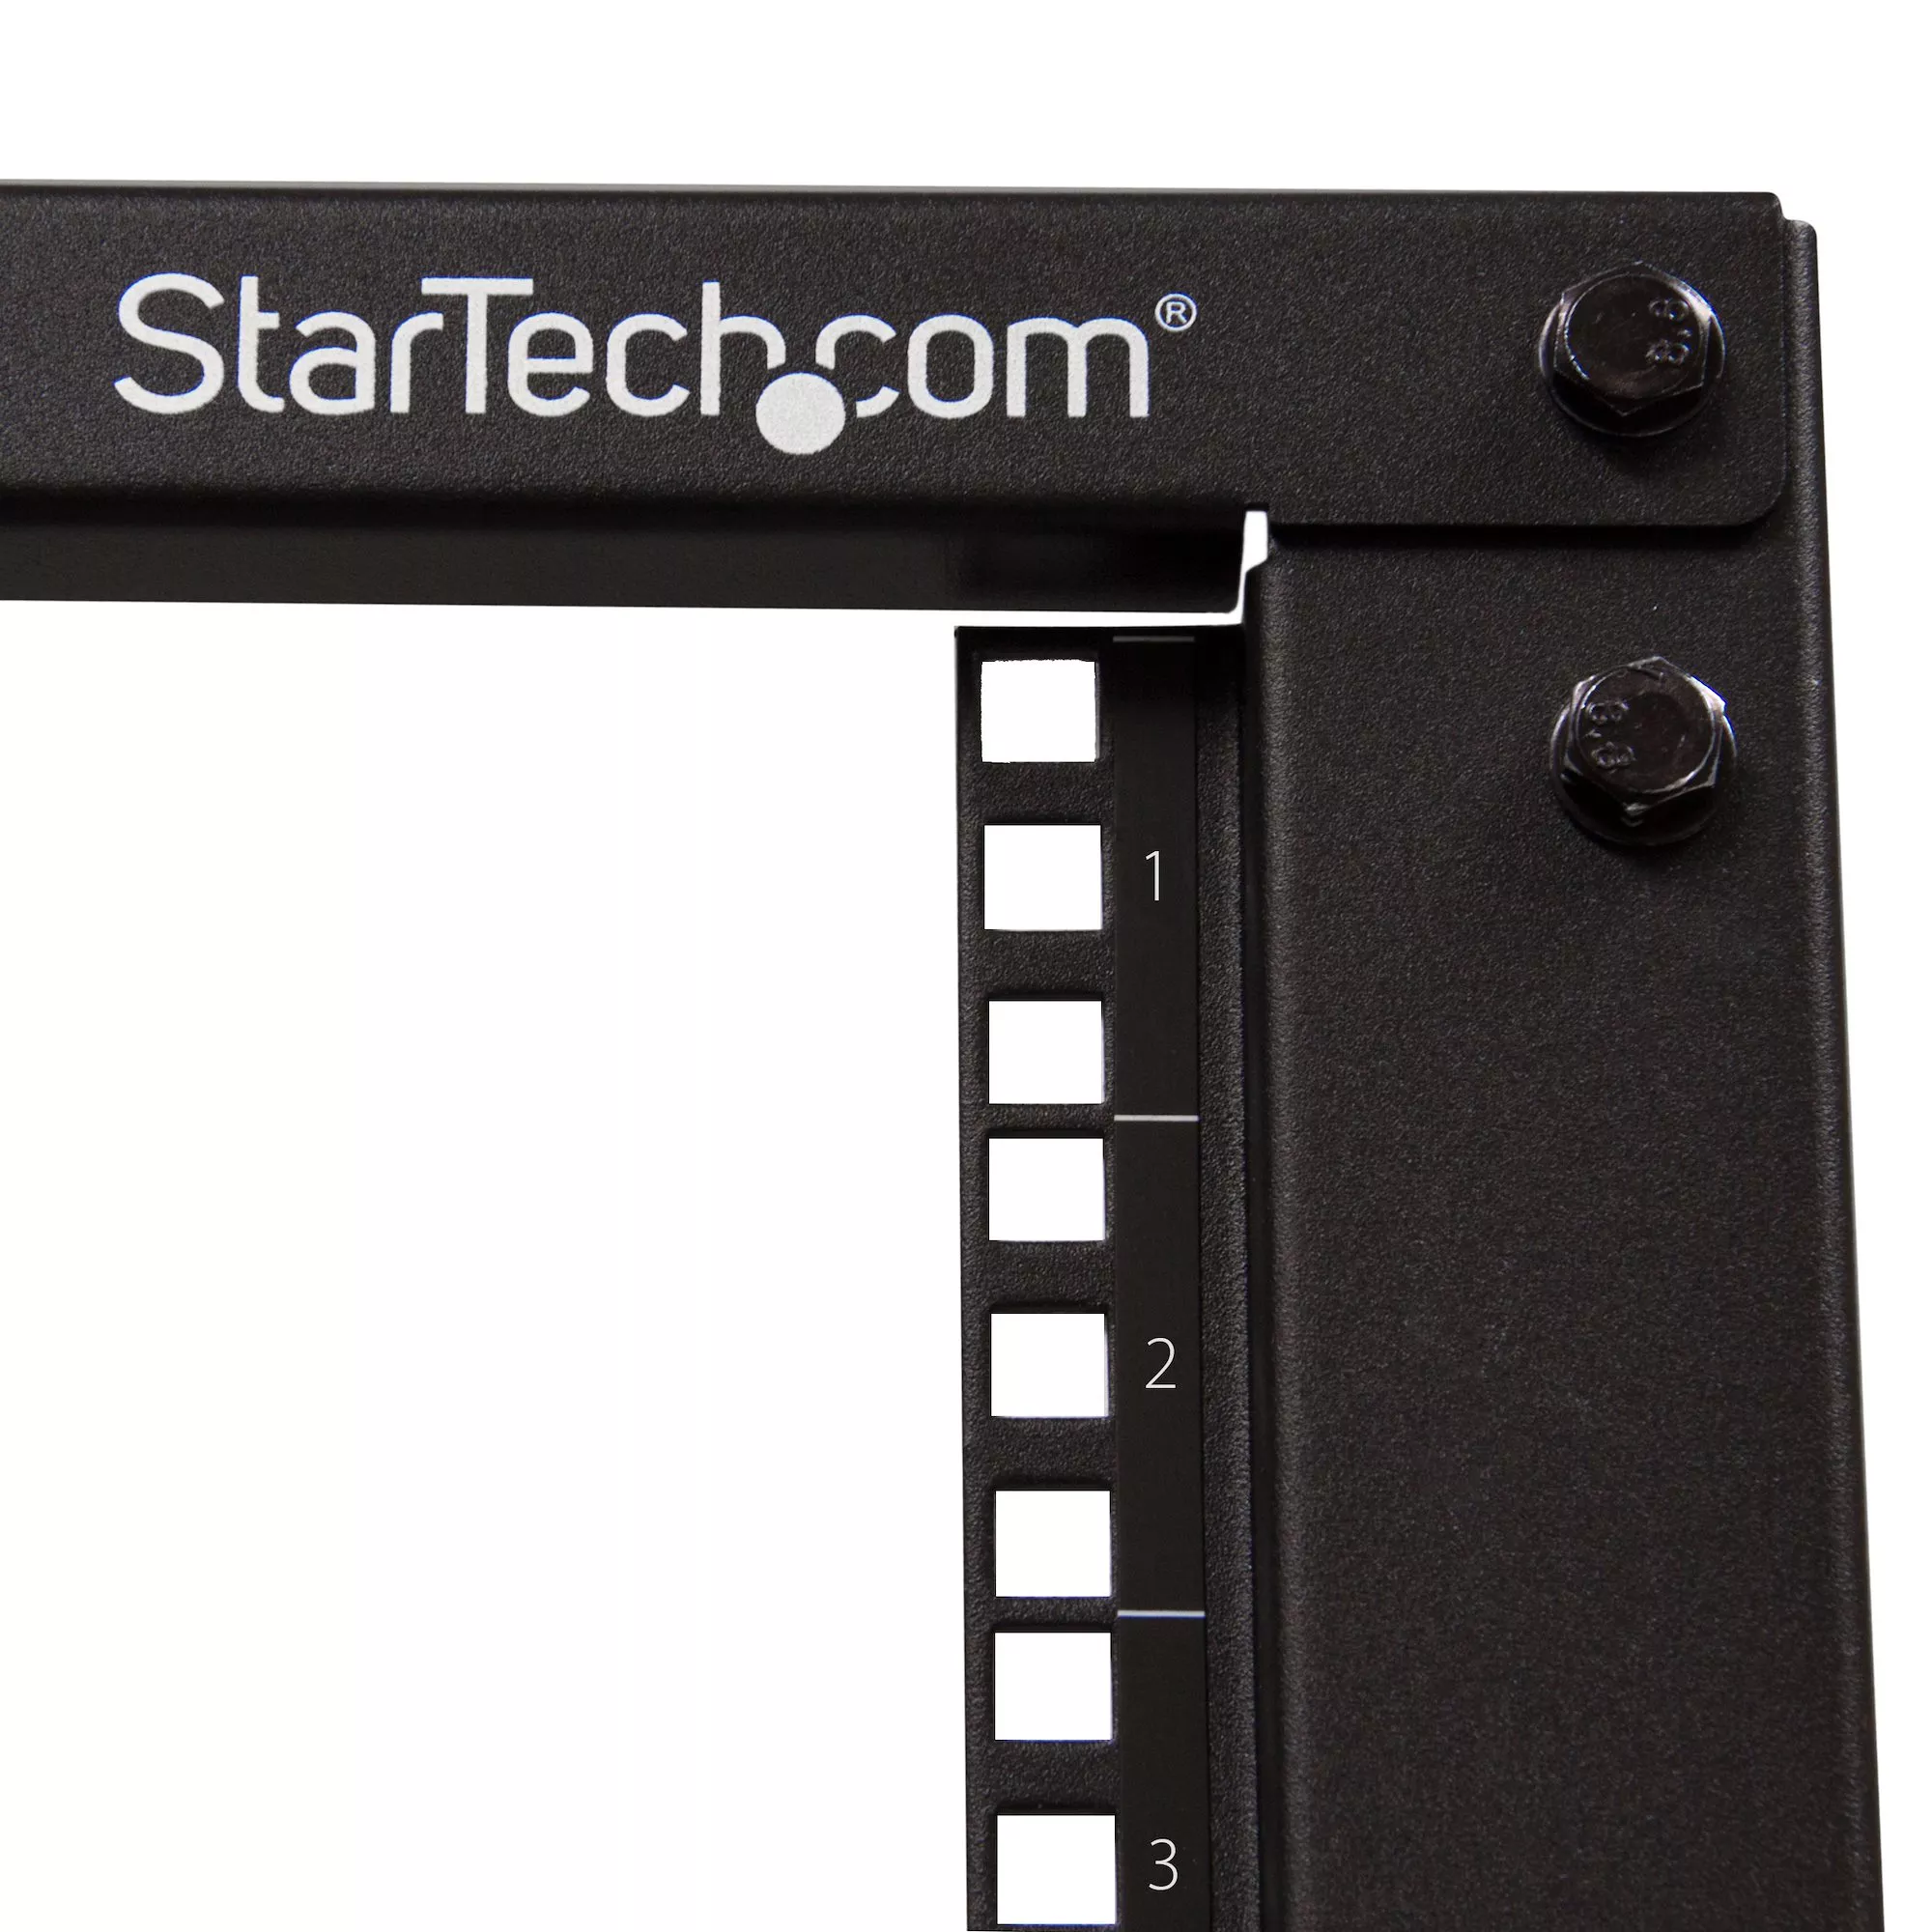 Achat StarTech.com Rack Serveur Mobile 15U 4 Poteaux, Rack sur hello RSE - visuel 5